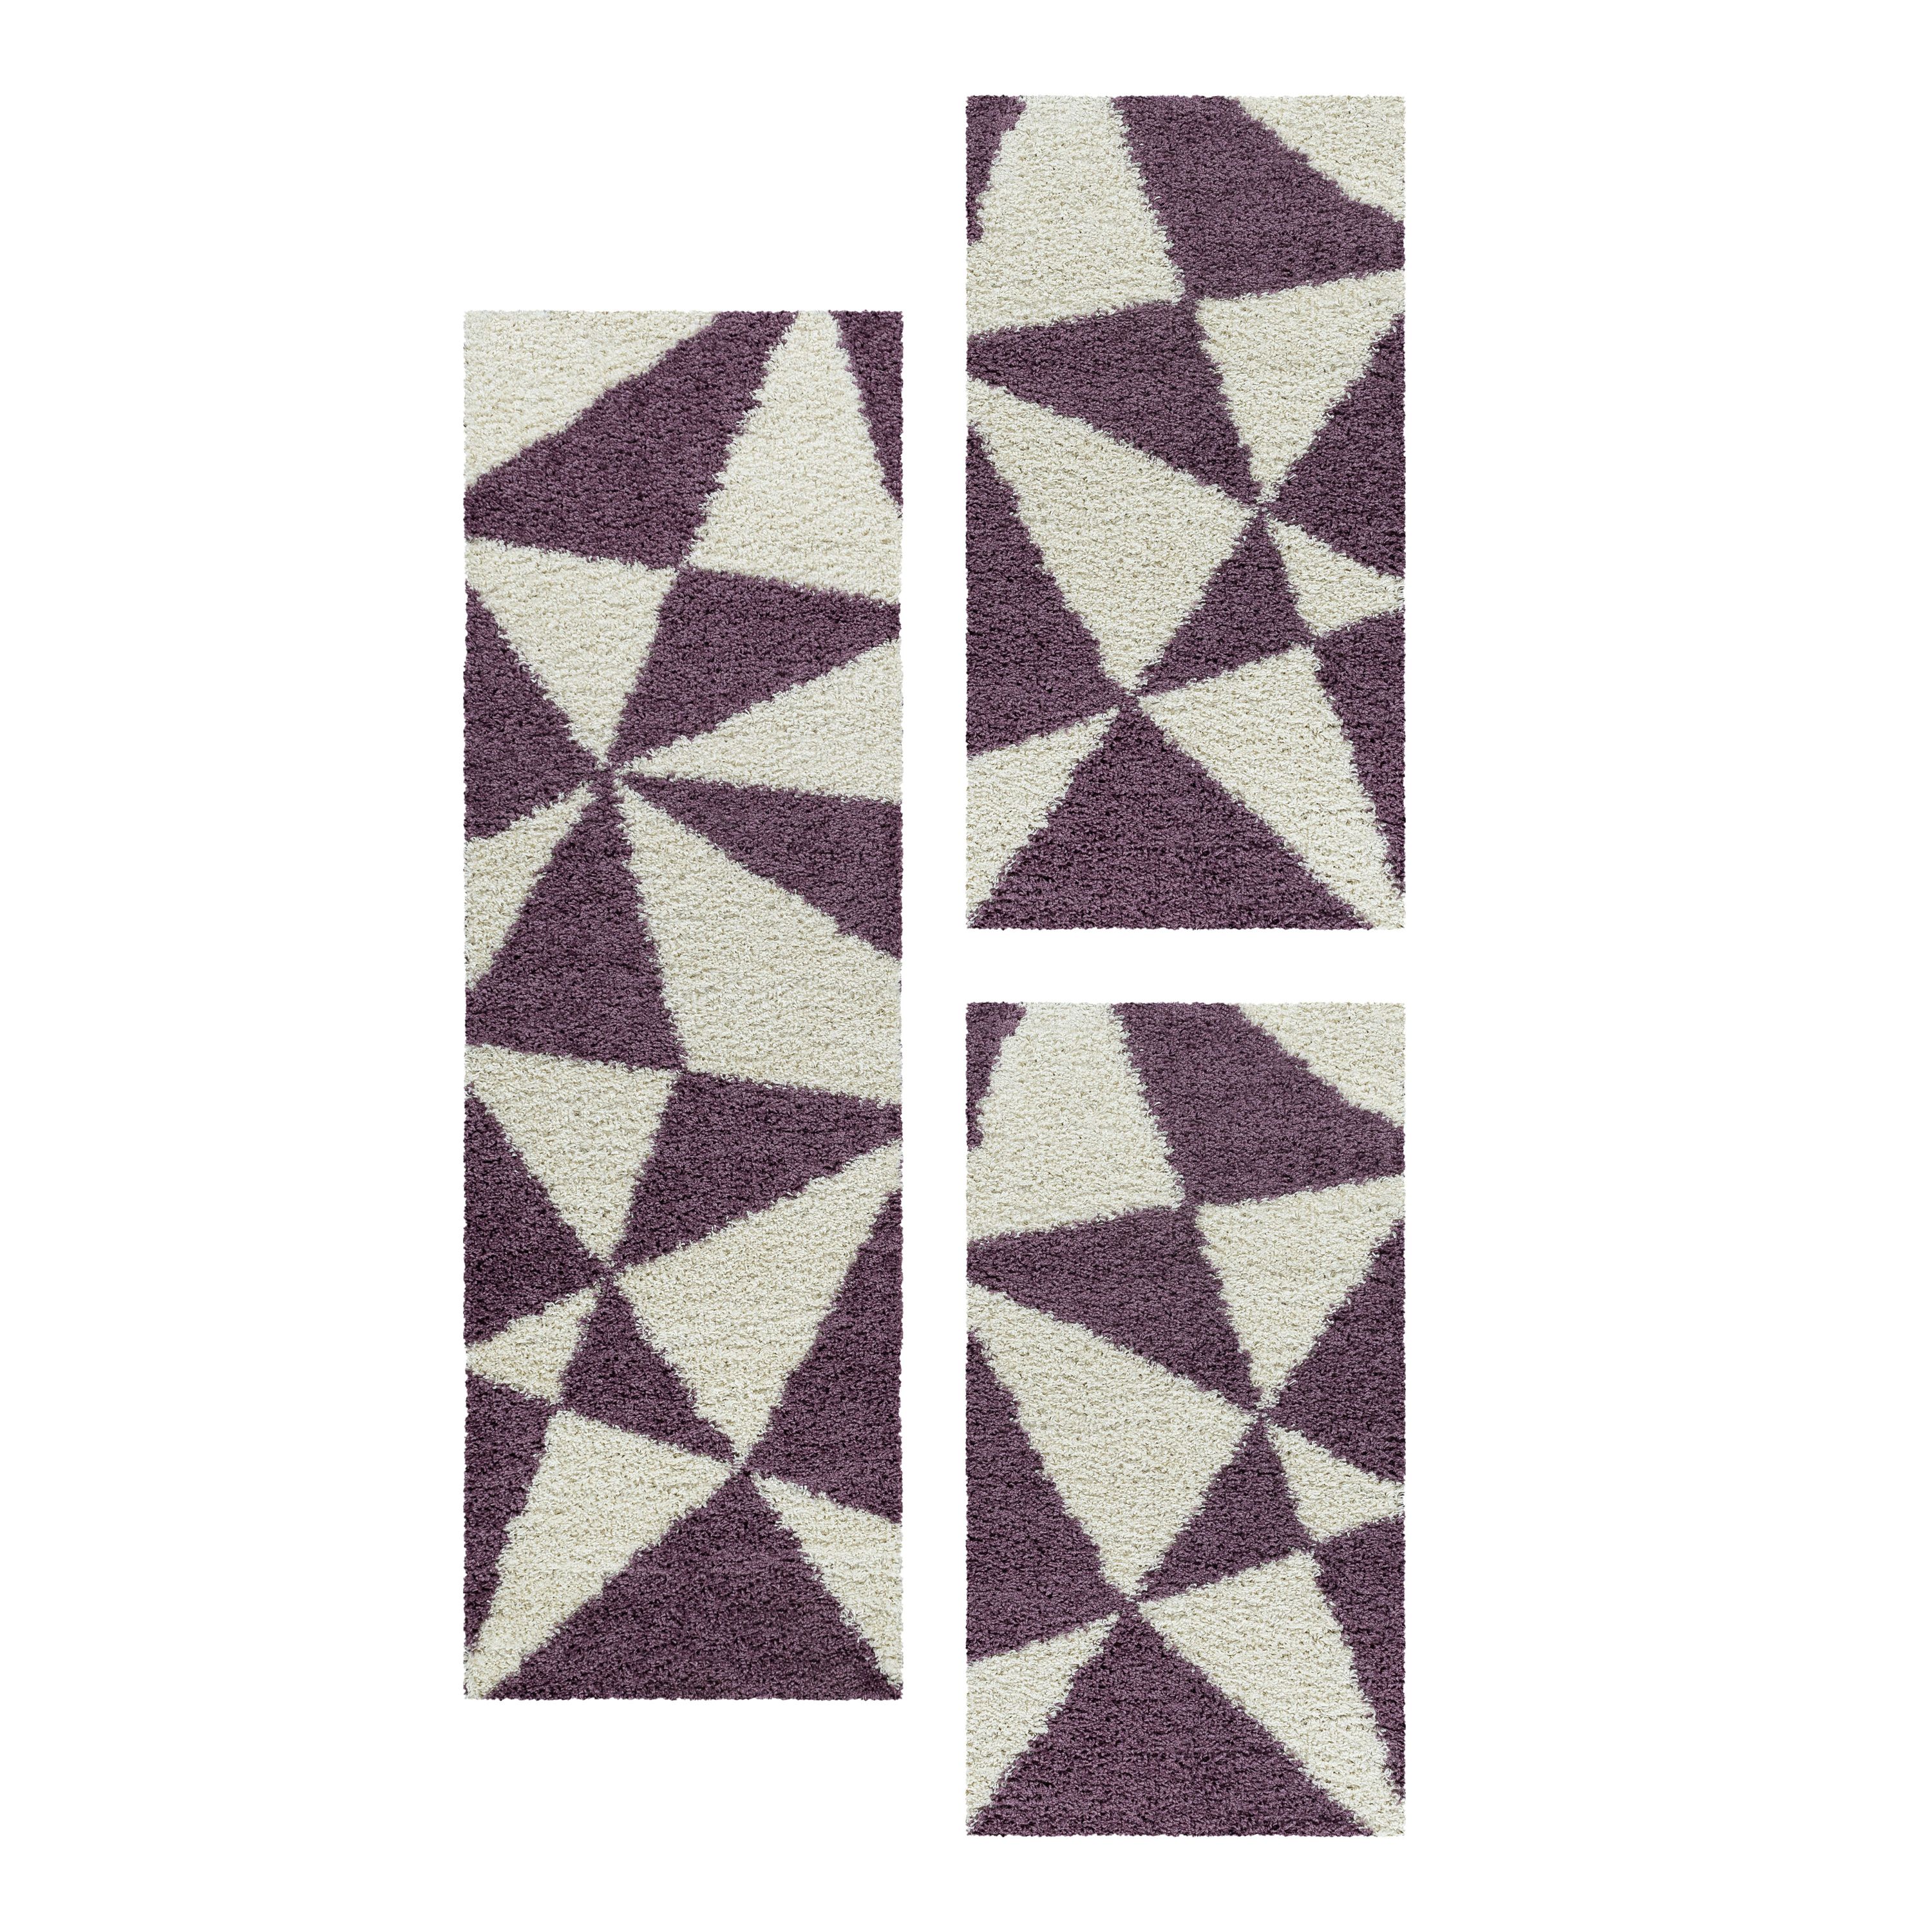 Design Teppich Set Shaggy Bettumrandung Läufer Set Muster Dreiecke 3 Teile Lila